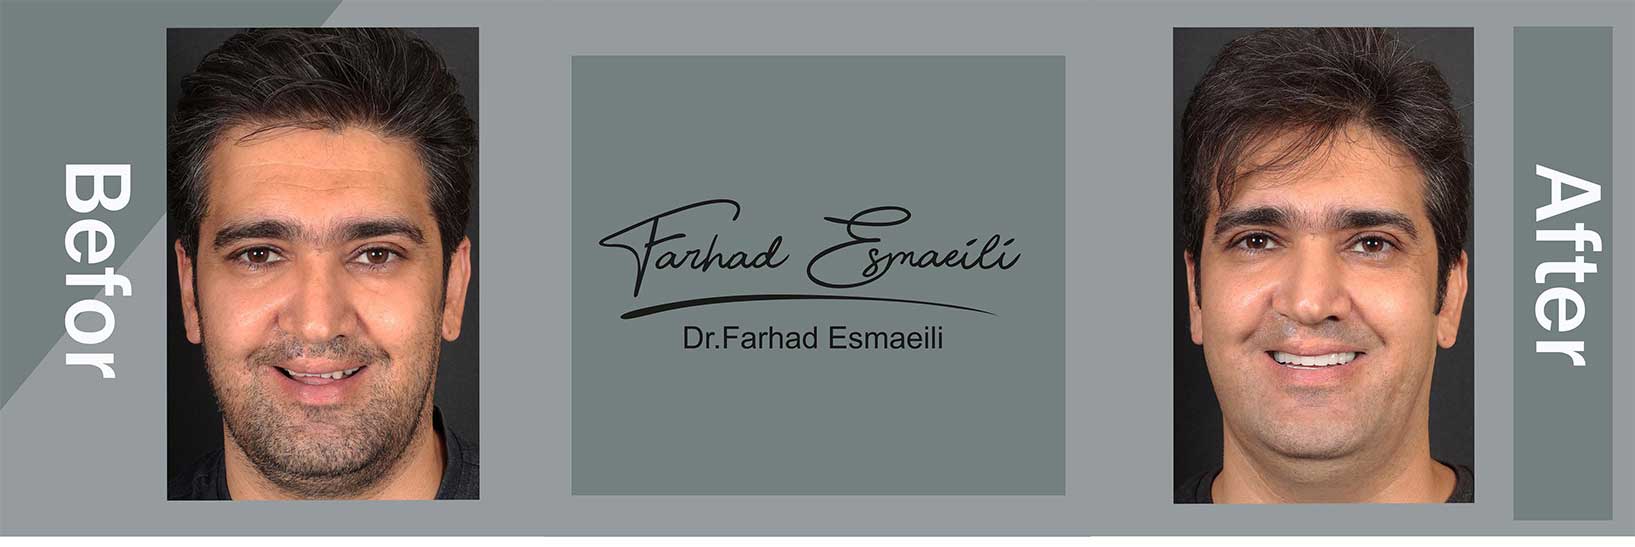 نمونه درمان ایمپلنت دیجیتال در اصفهان توسط دکتر فرهاد اسماعیلی